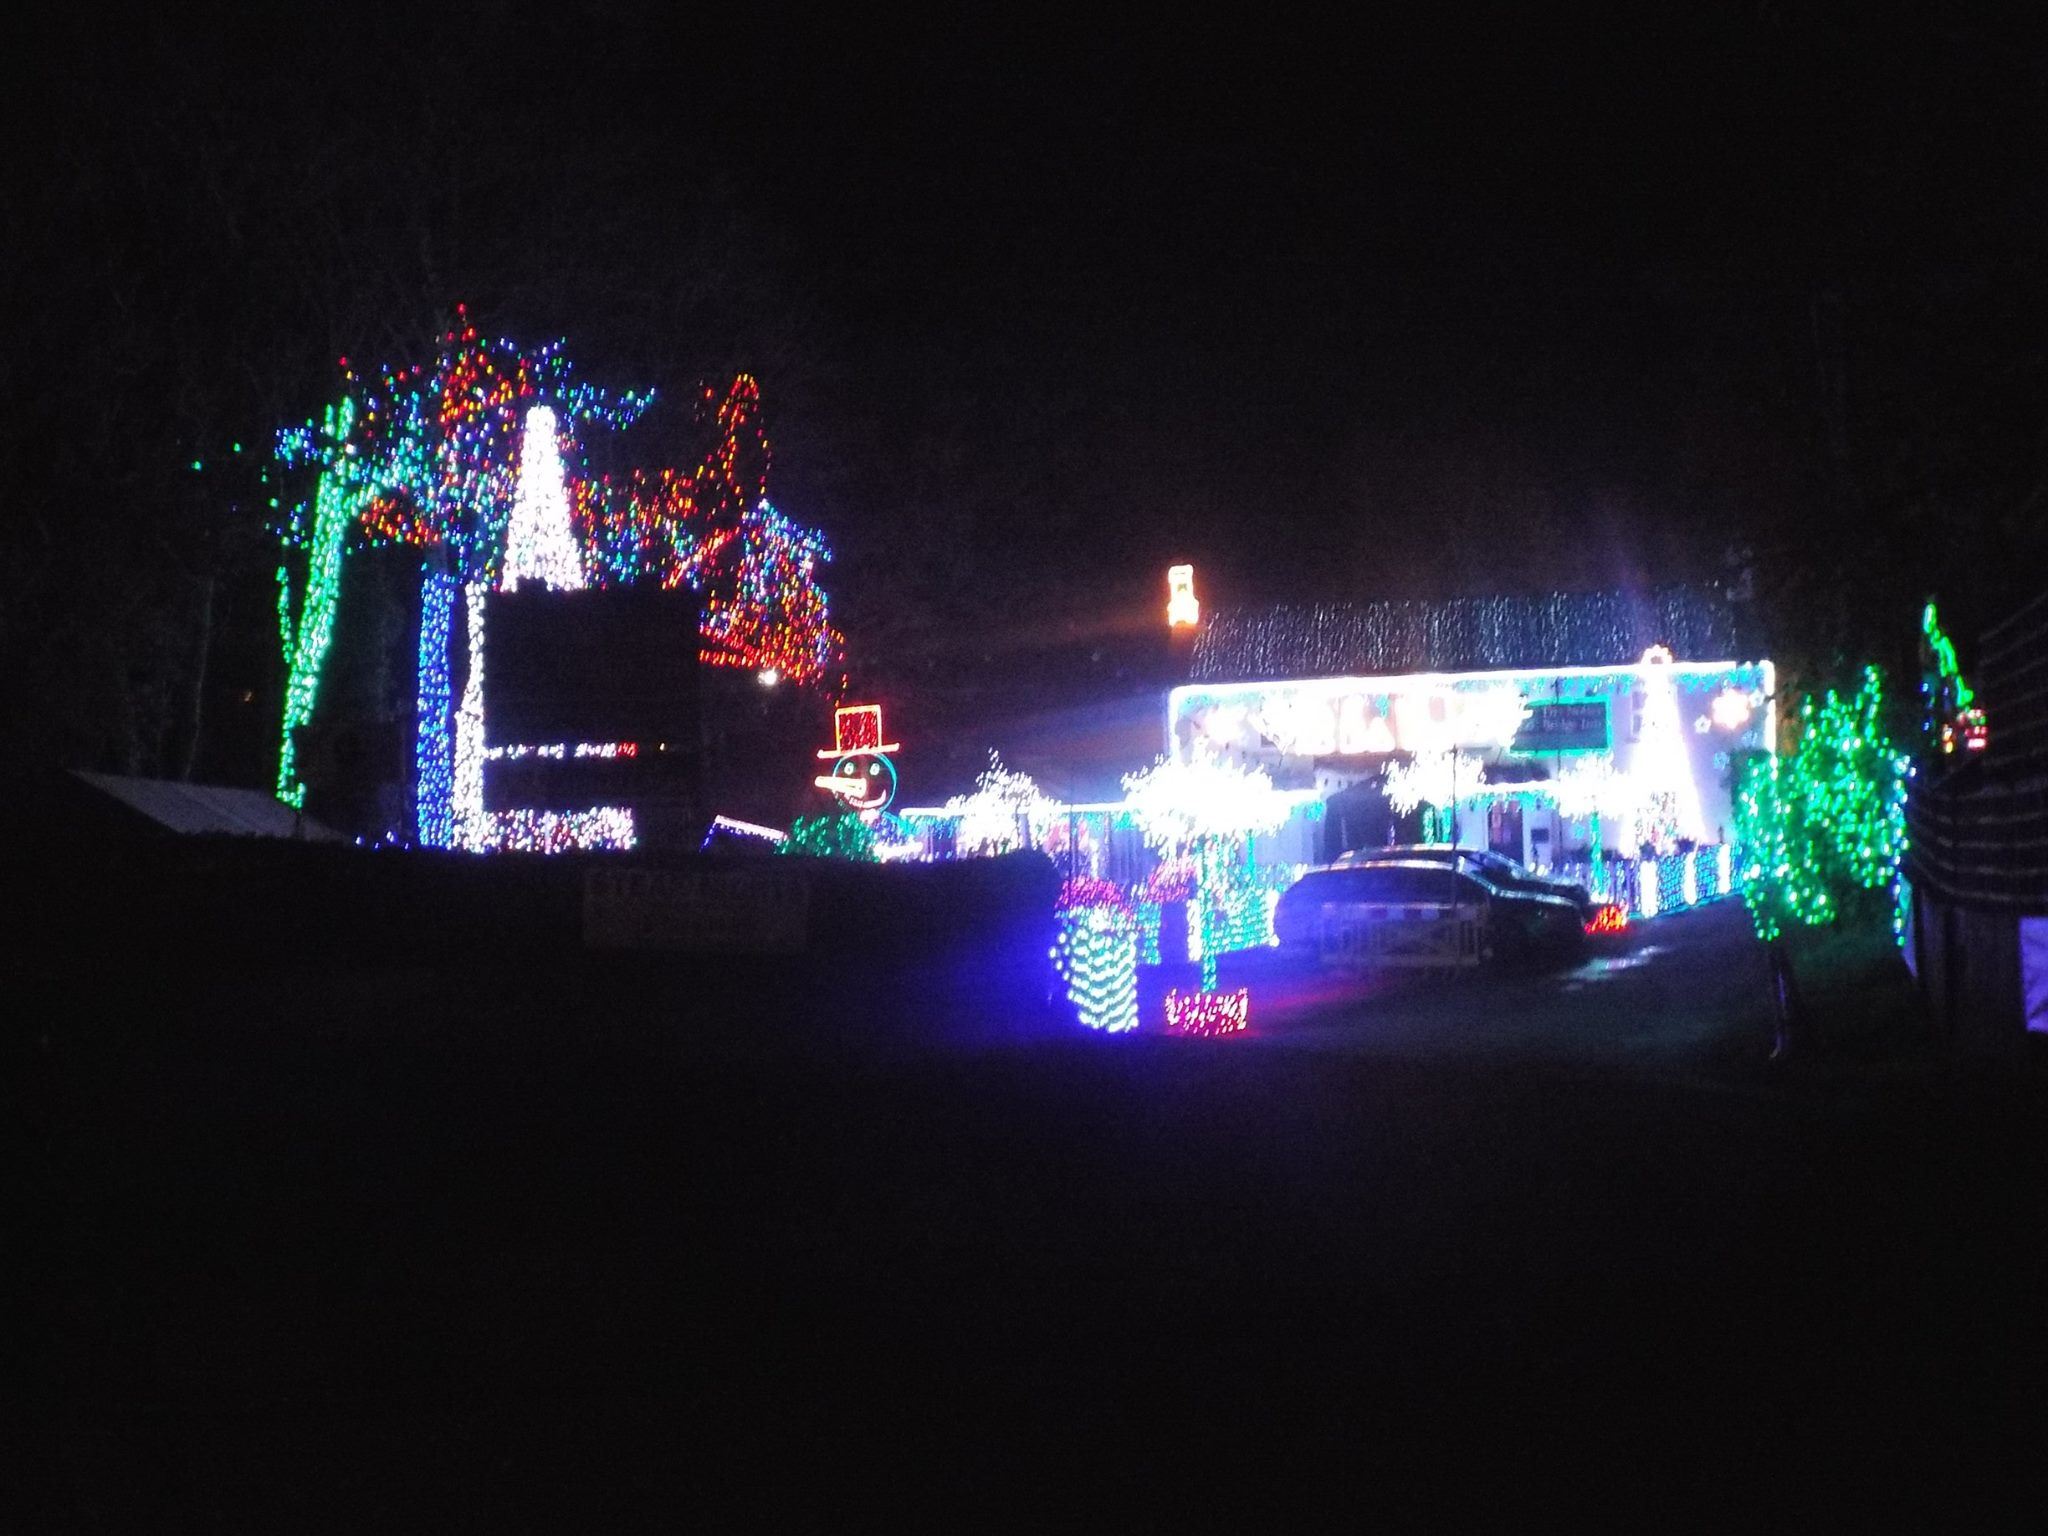 Notter Bridge Inn Christmas Lights